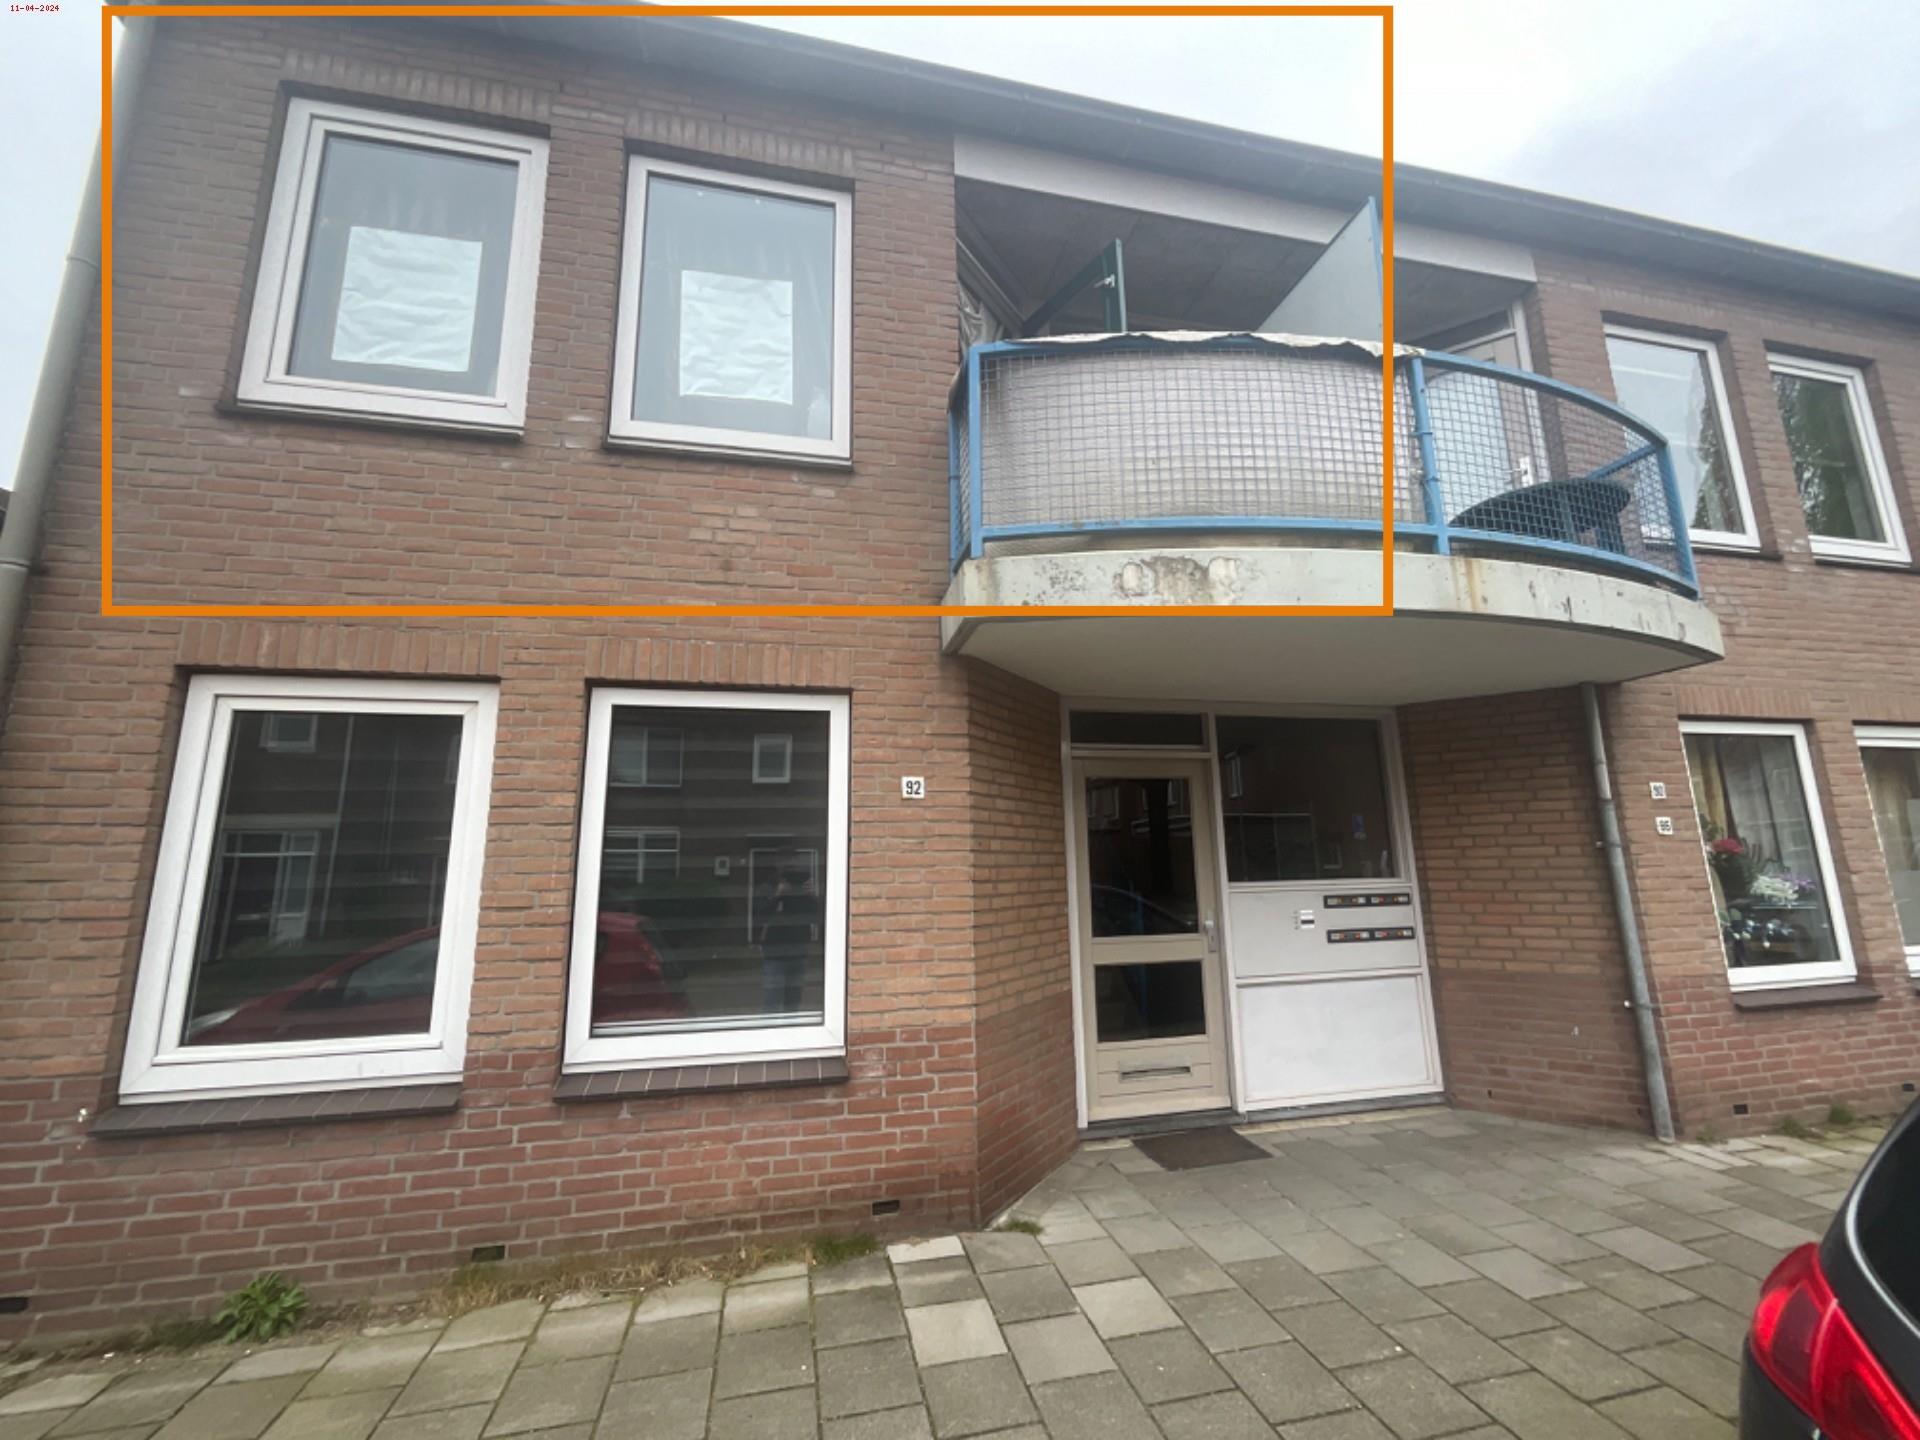 Willemstraat 92, 6882 KE Velp, Nederland